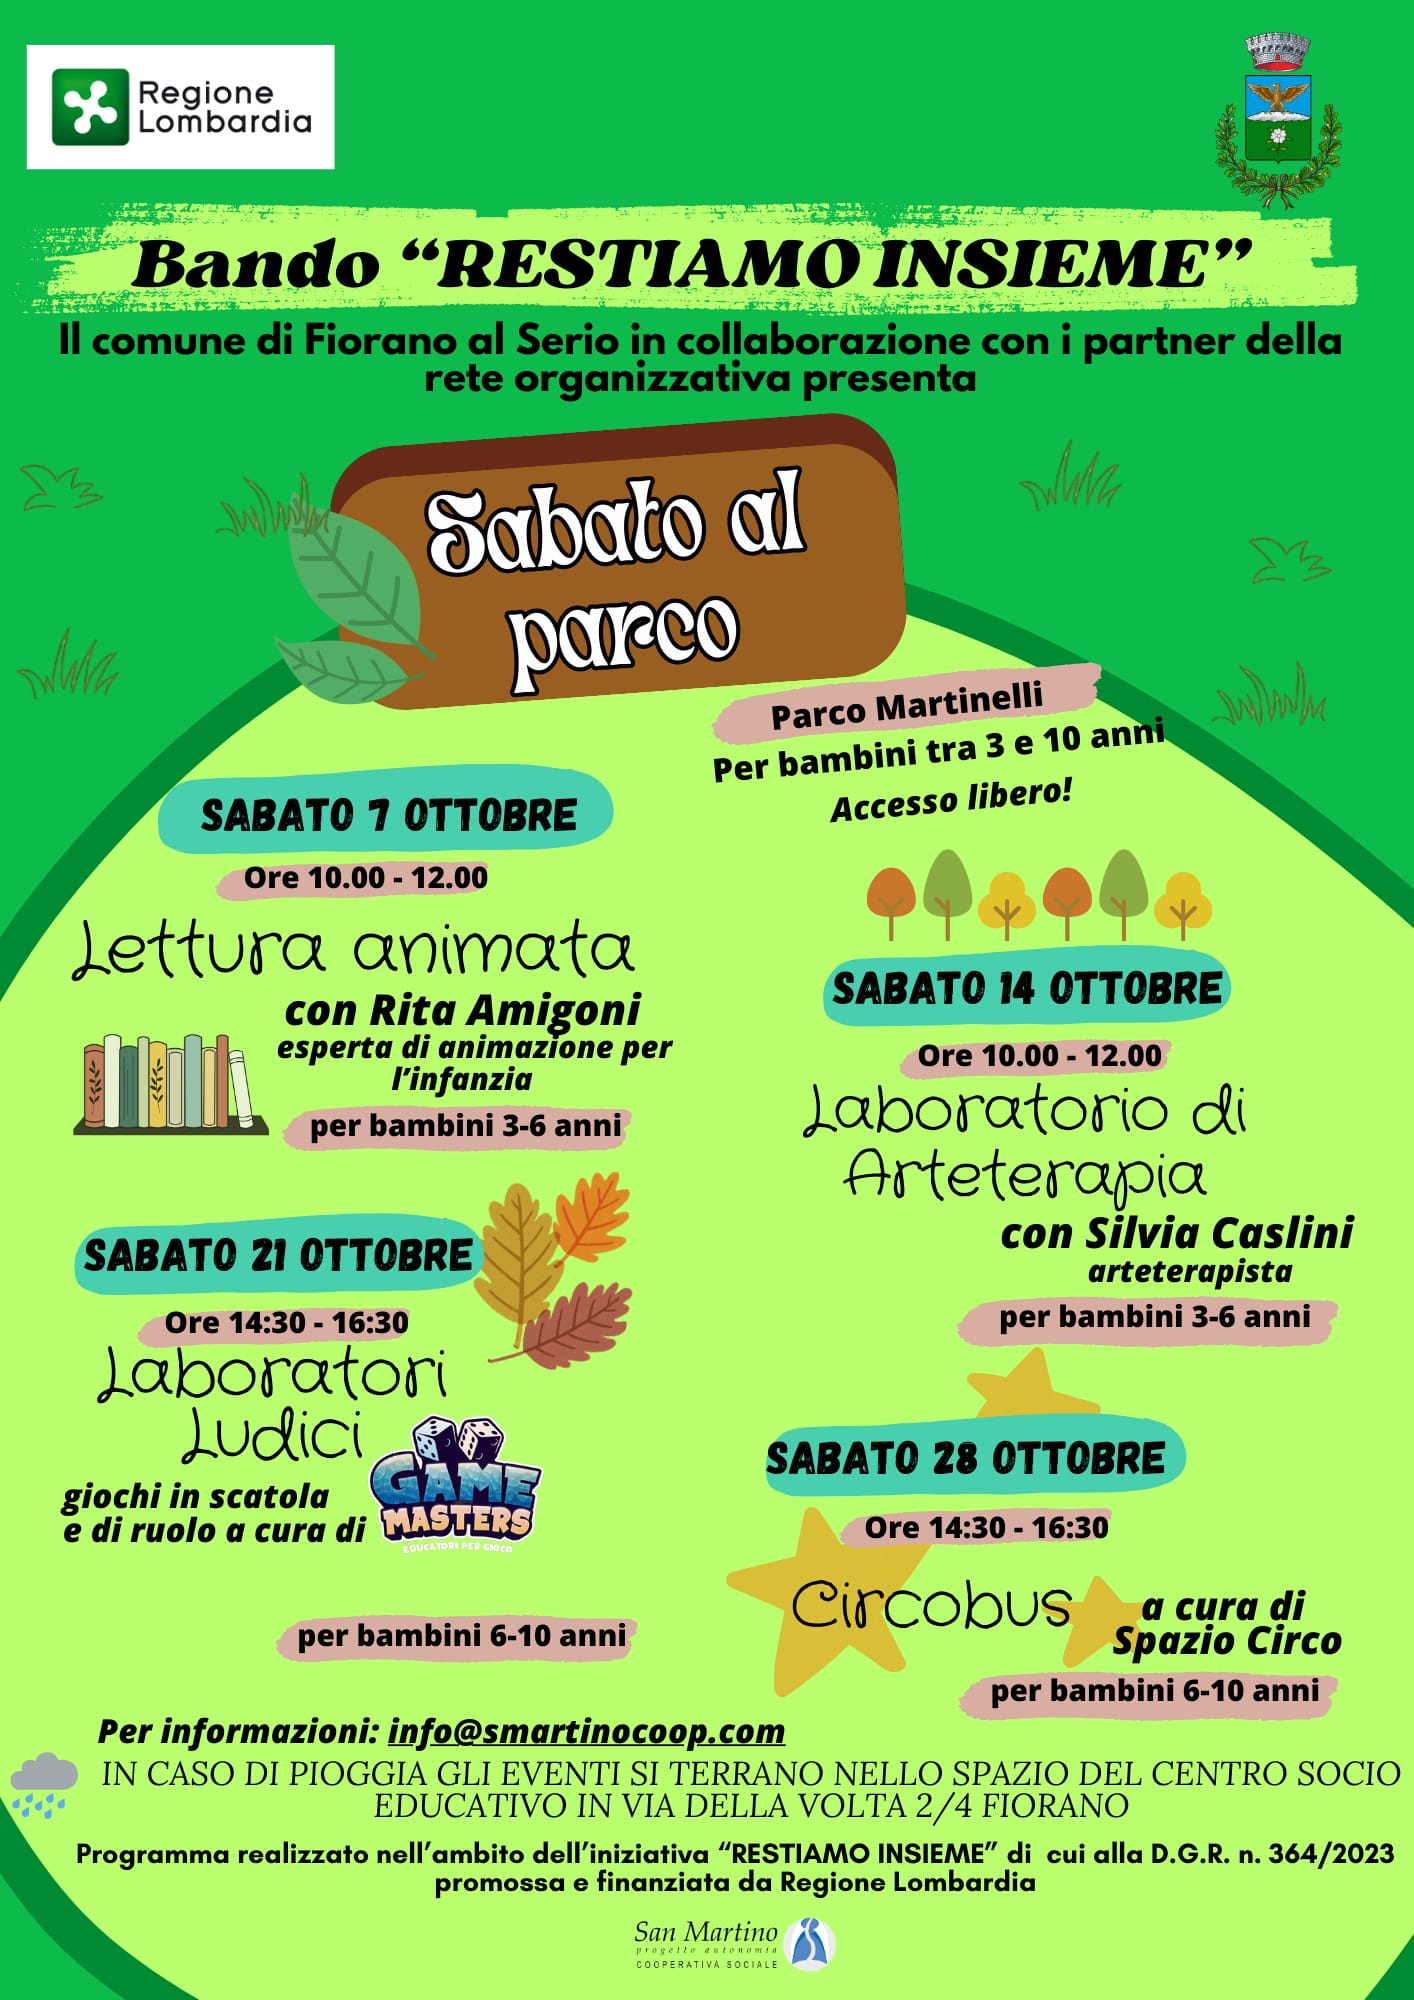 Il Comune di Fiorano al Serio in collaborazione con i partner della rete organizzativa presenta: SABATO AL PARCO c/o il Parco Martinelli - tutti i sabati di Ottobre